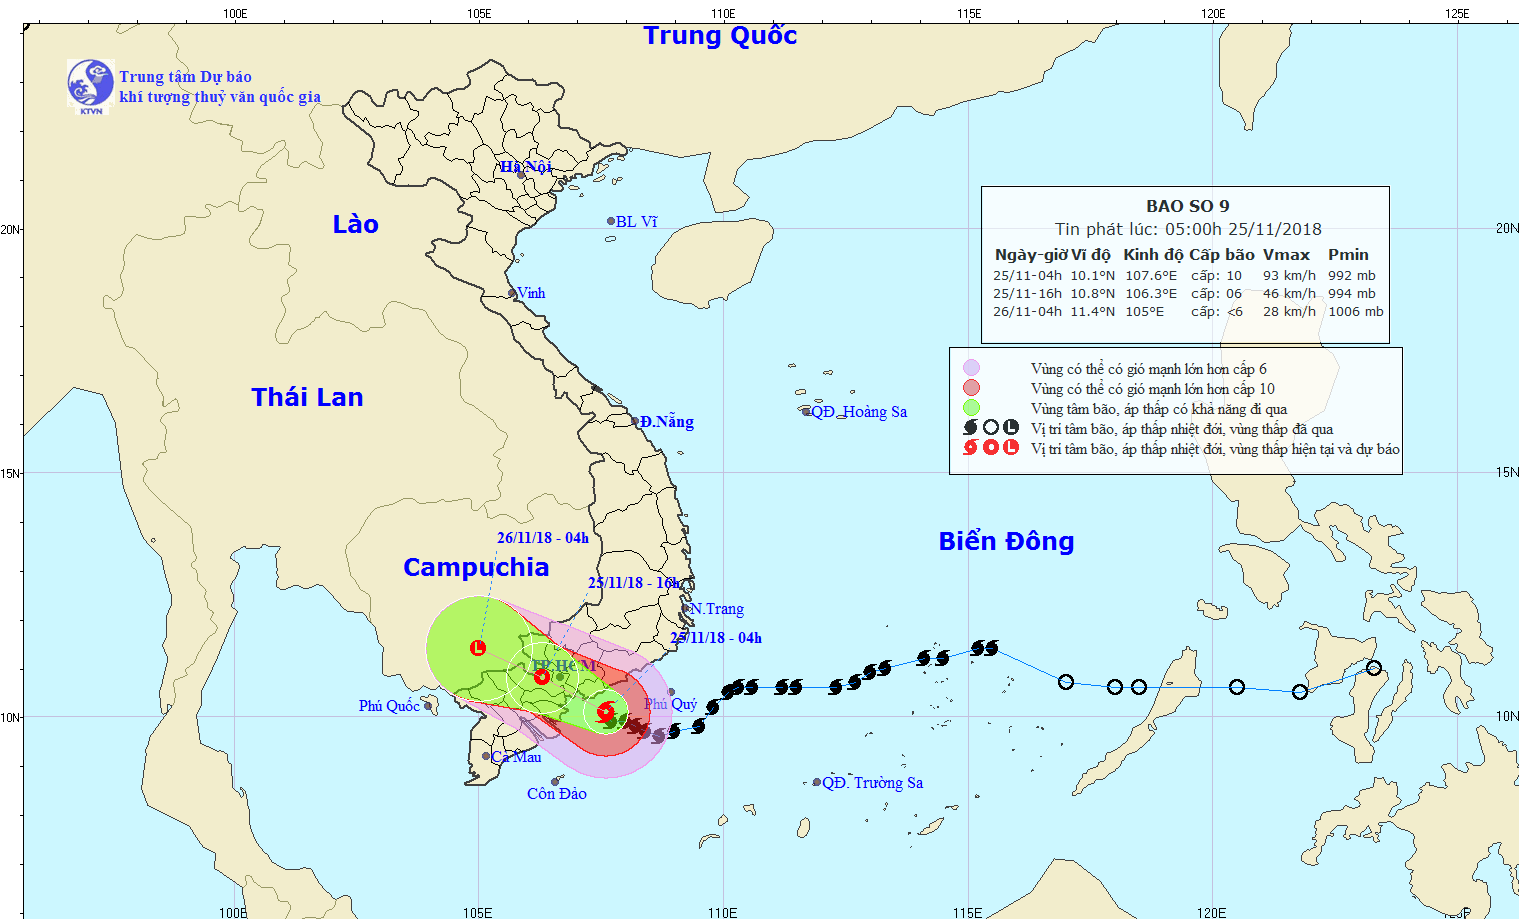 Cận cảnh TP HCM khi bão số 9 đang sát đất liền - Ảnh 4.